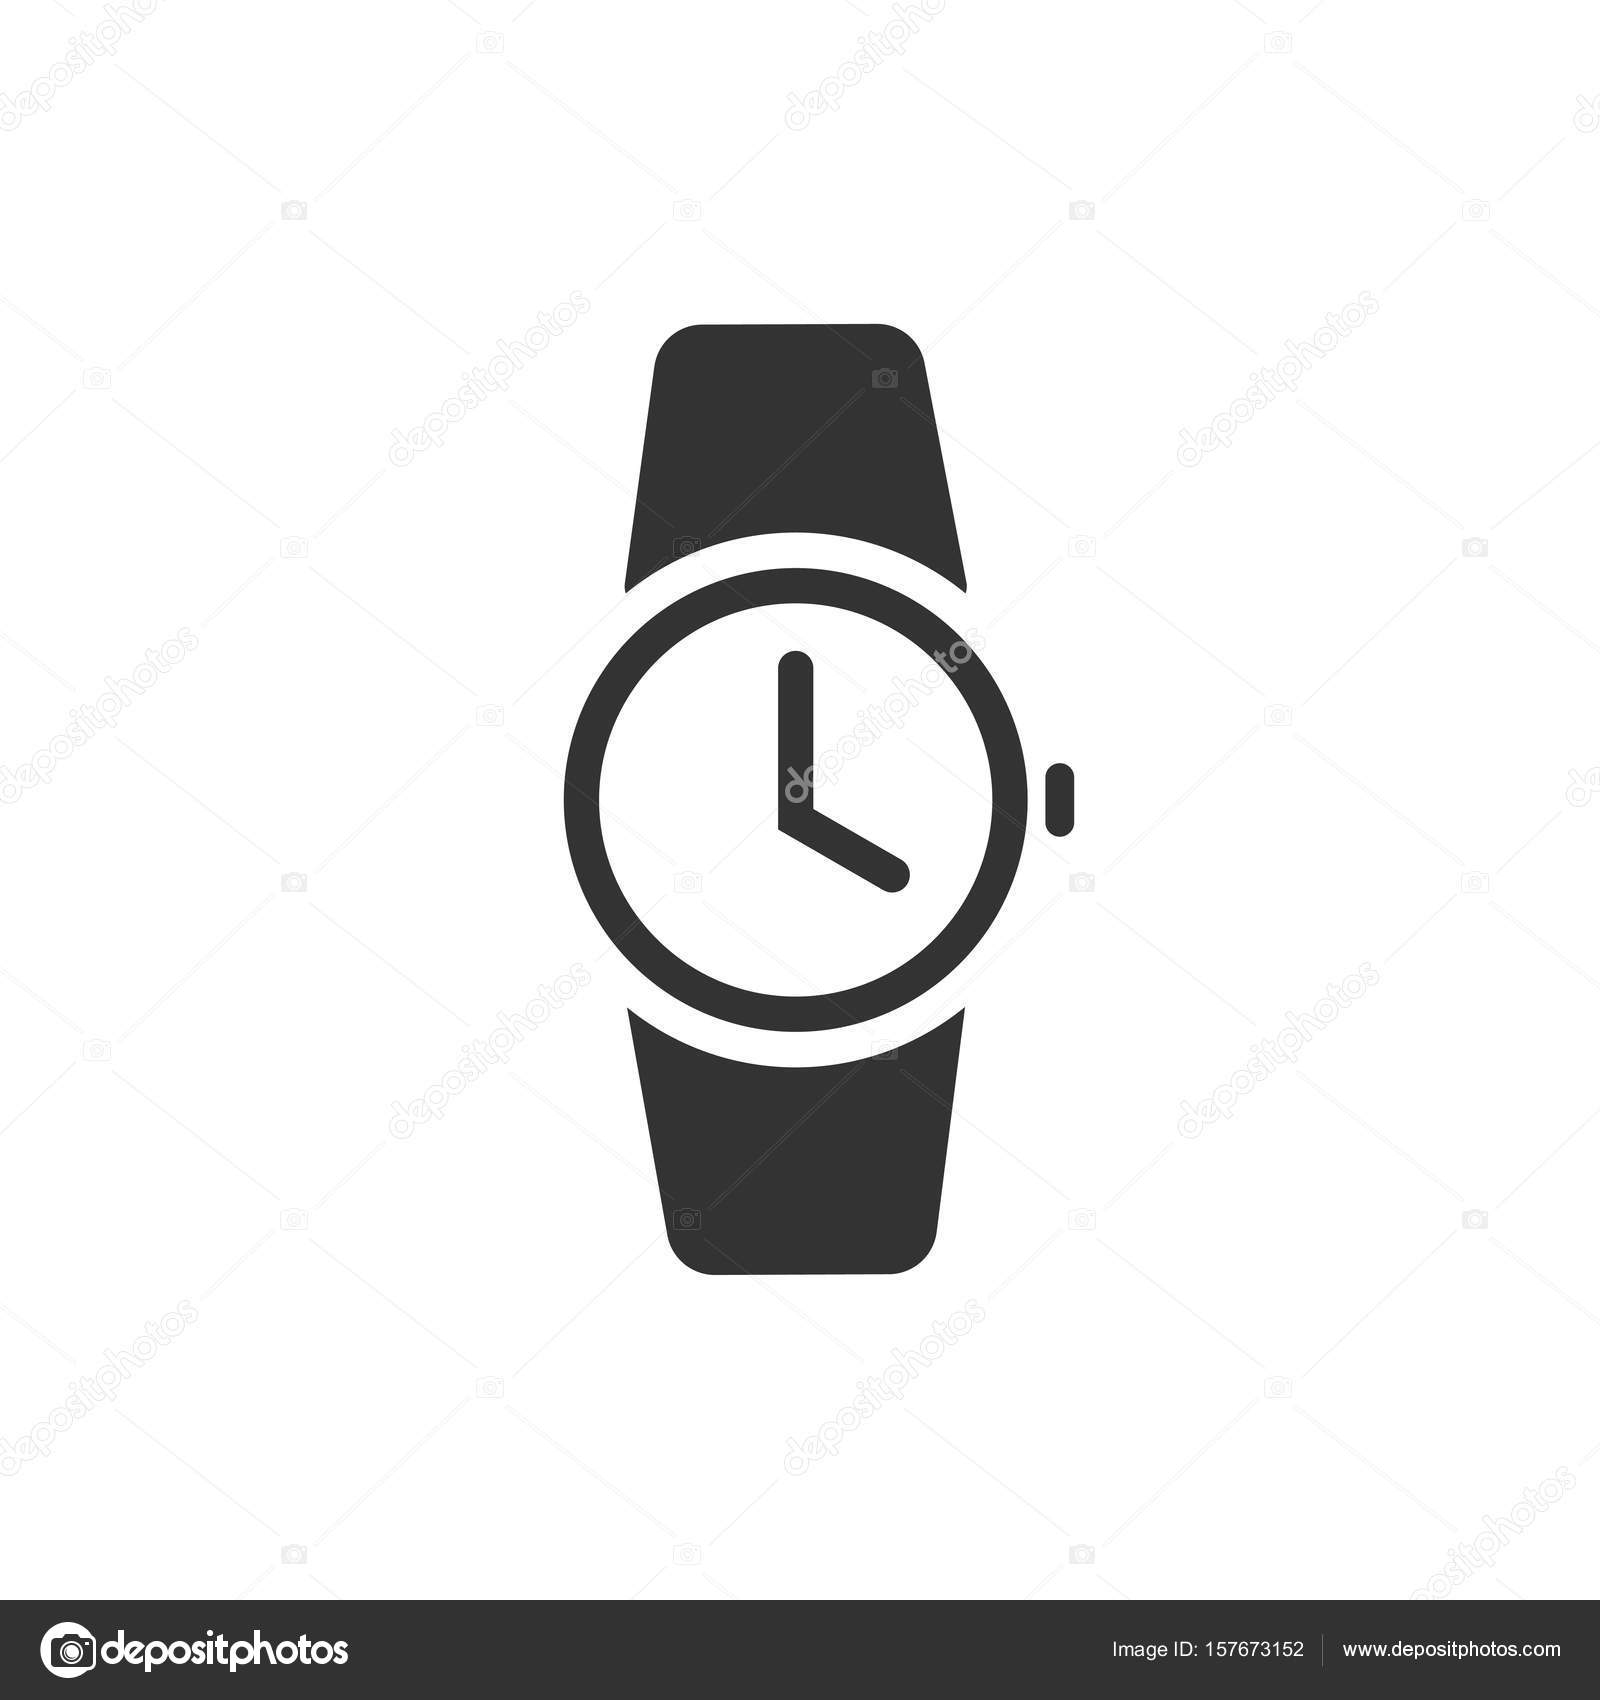 Ilustração em vetor preto e branco de um relógio de pulso imagem de  contorno do relógio desenhado à mão